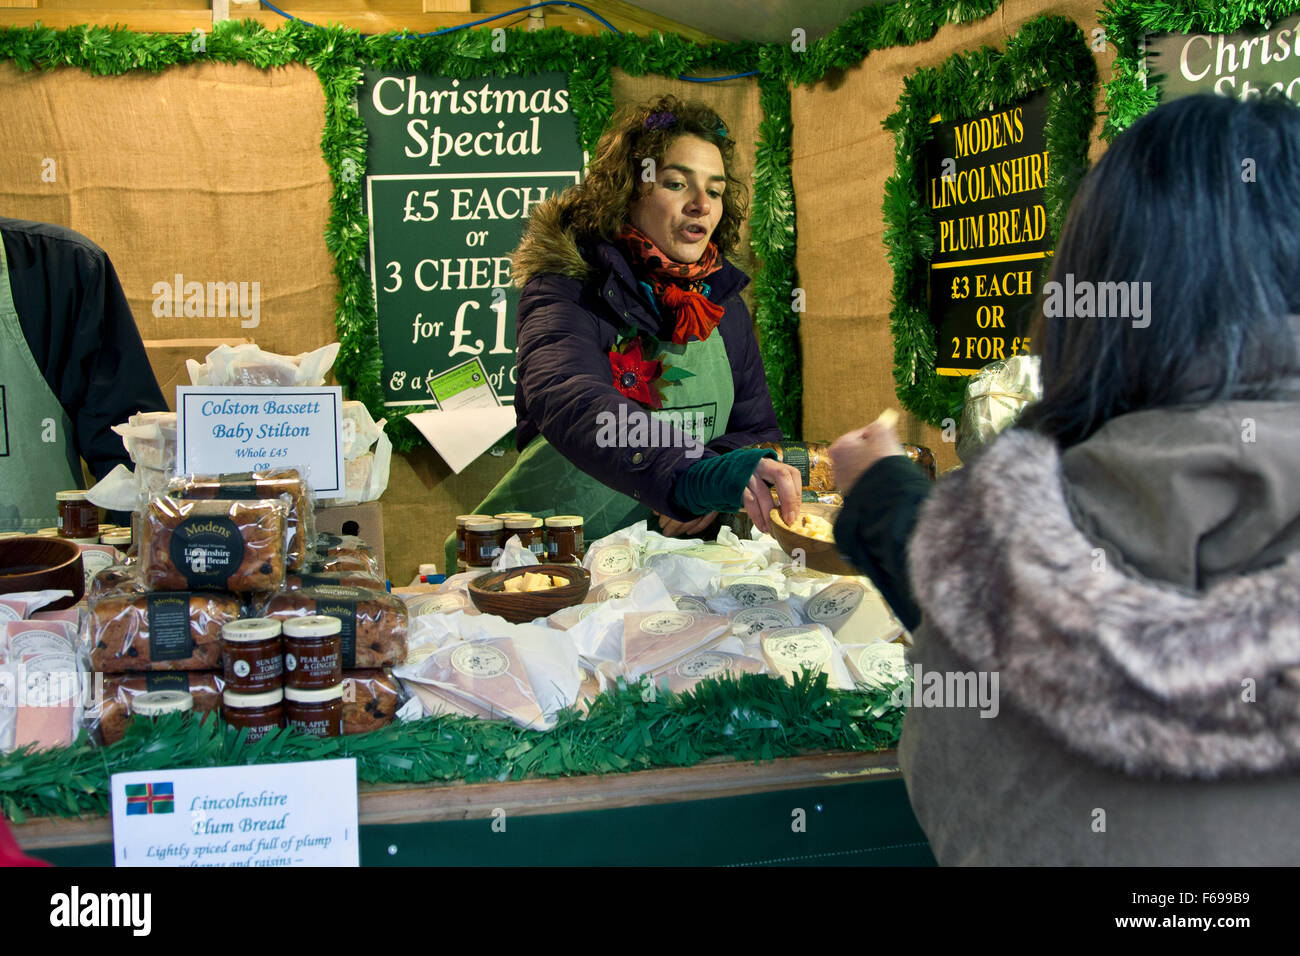 Lincoln, England, Chriskindlemarkt, einen Lebensmittel-Stand Verkauf von lokalen und anderen britischen Käse, Lincolnshire Poacher Käse, Stockfoto